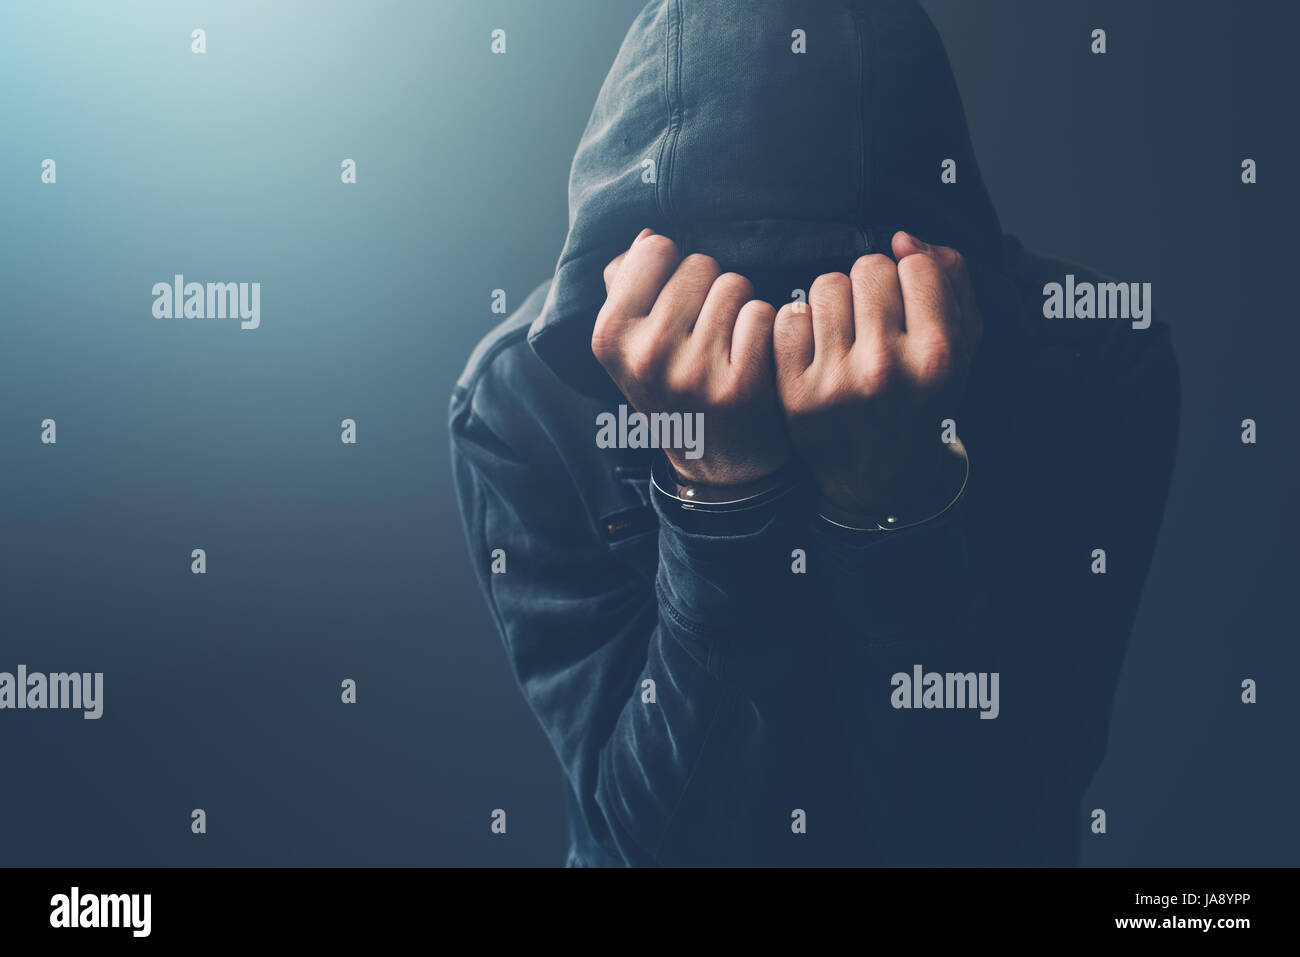 Verhafteten Computer-Hacker und Cyber-kriminellen mit Handschellen tragen Kapuzen Jacke Gesicht versteckt Stockfoto